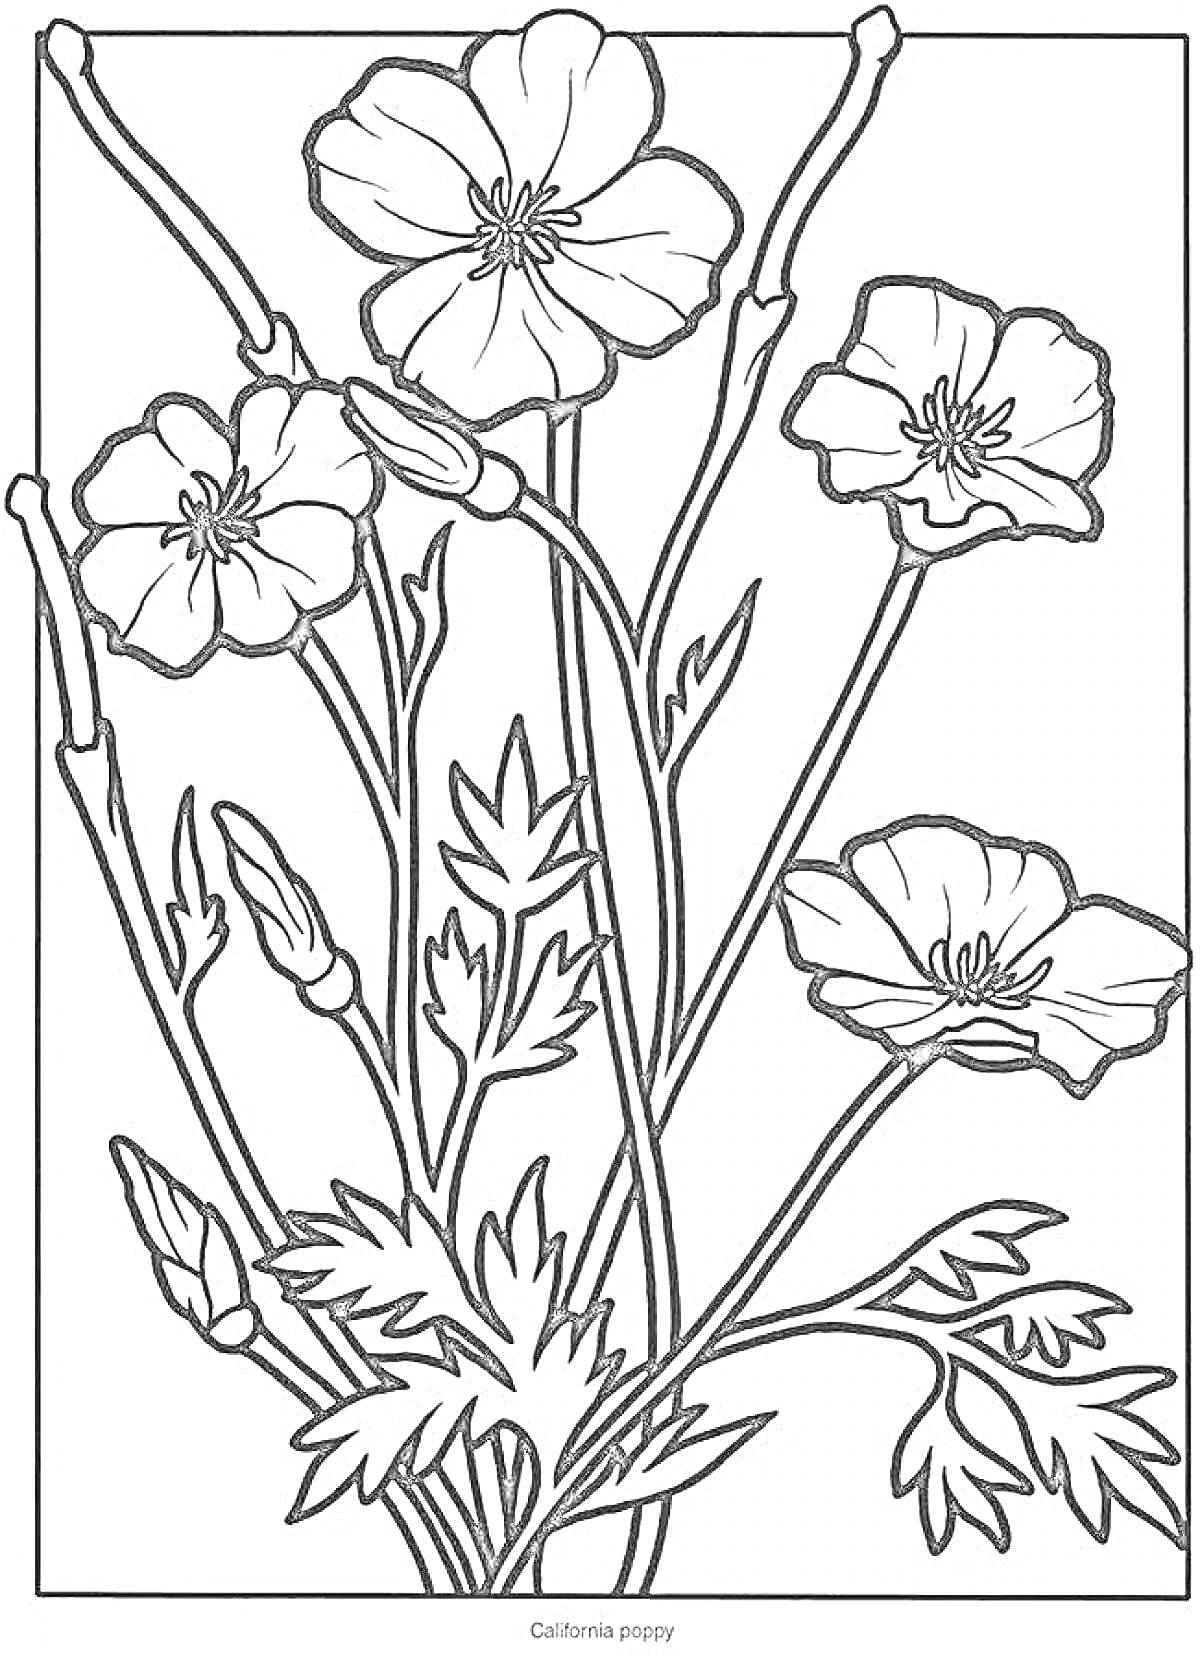 Полевые цветы - калифорнийские маки, несколько стеблей с цветами и бутонами